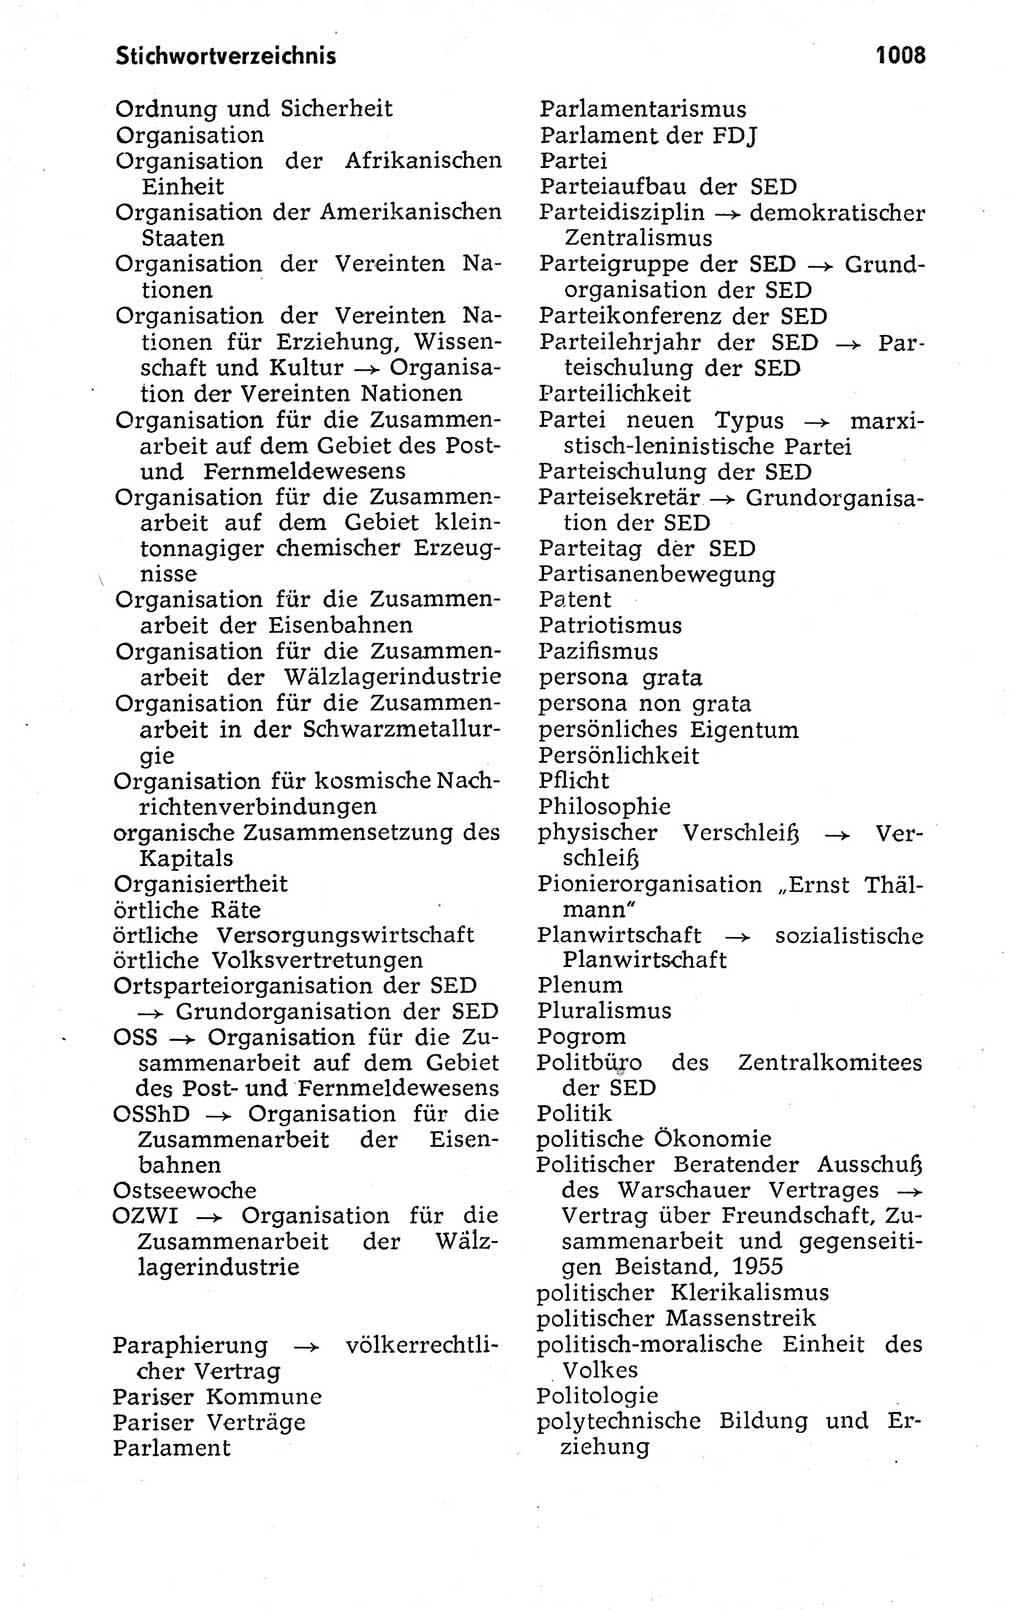 Kleines politisches Wörterbuch [Deutsche Demokratische Republik (DDR)] 1973, Seite 1008 (Kl. pol. Wb. DDR 1973, S. 1008)